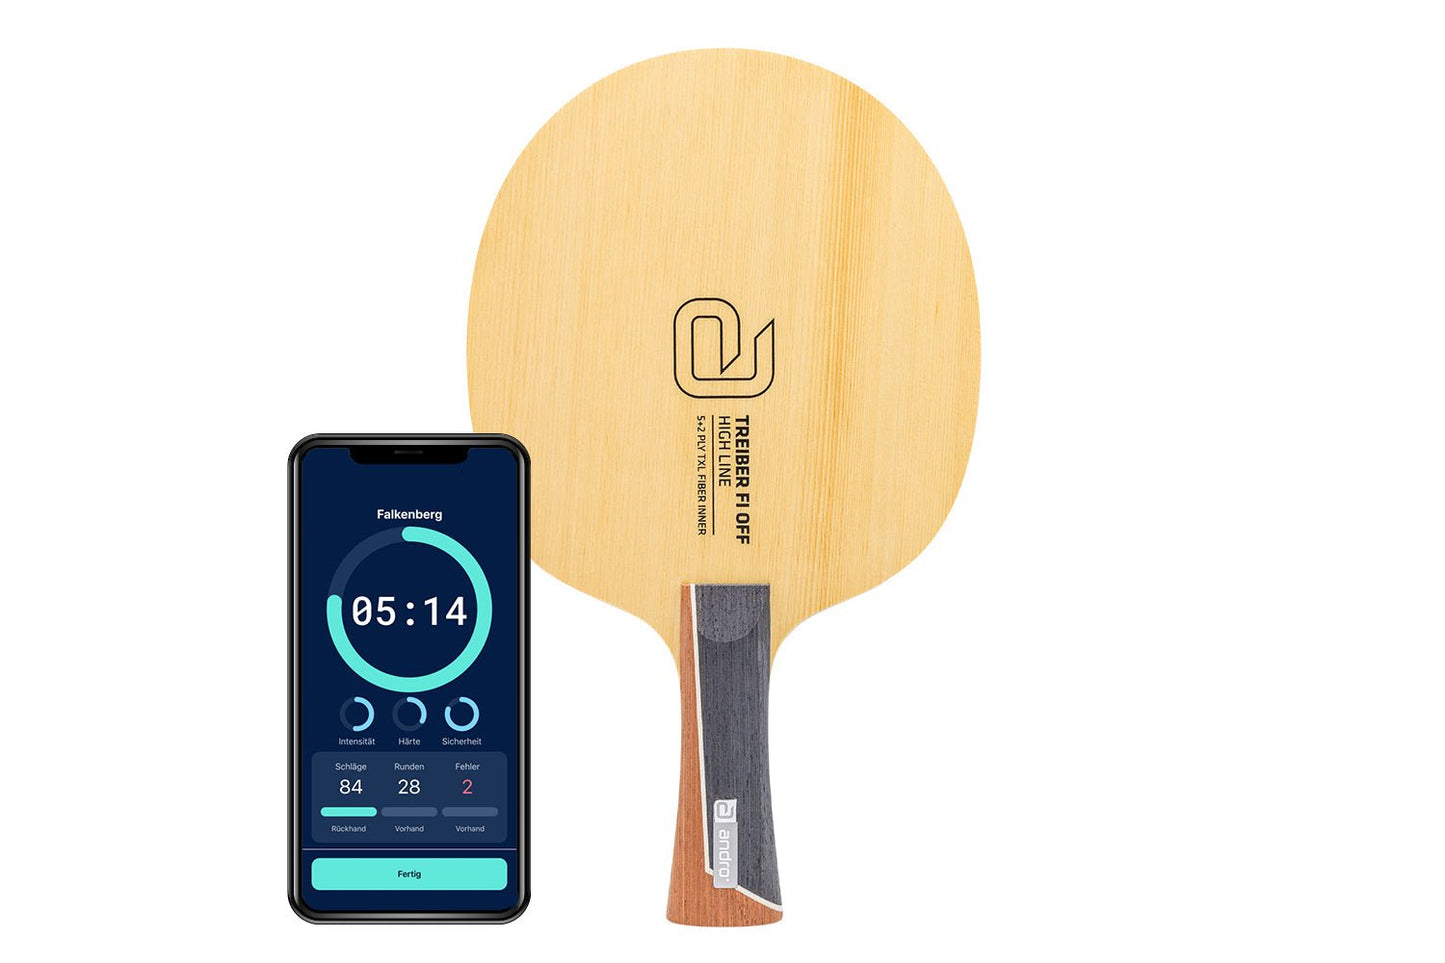 andro Treiber FI OFF Tischtennisschläger mit konkaven Griff und Smartphone zeigt Daten des Schlägers vor weißem Hintergrund